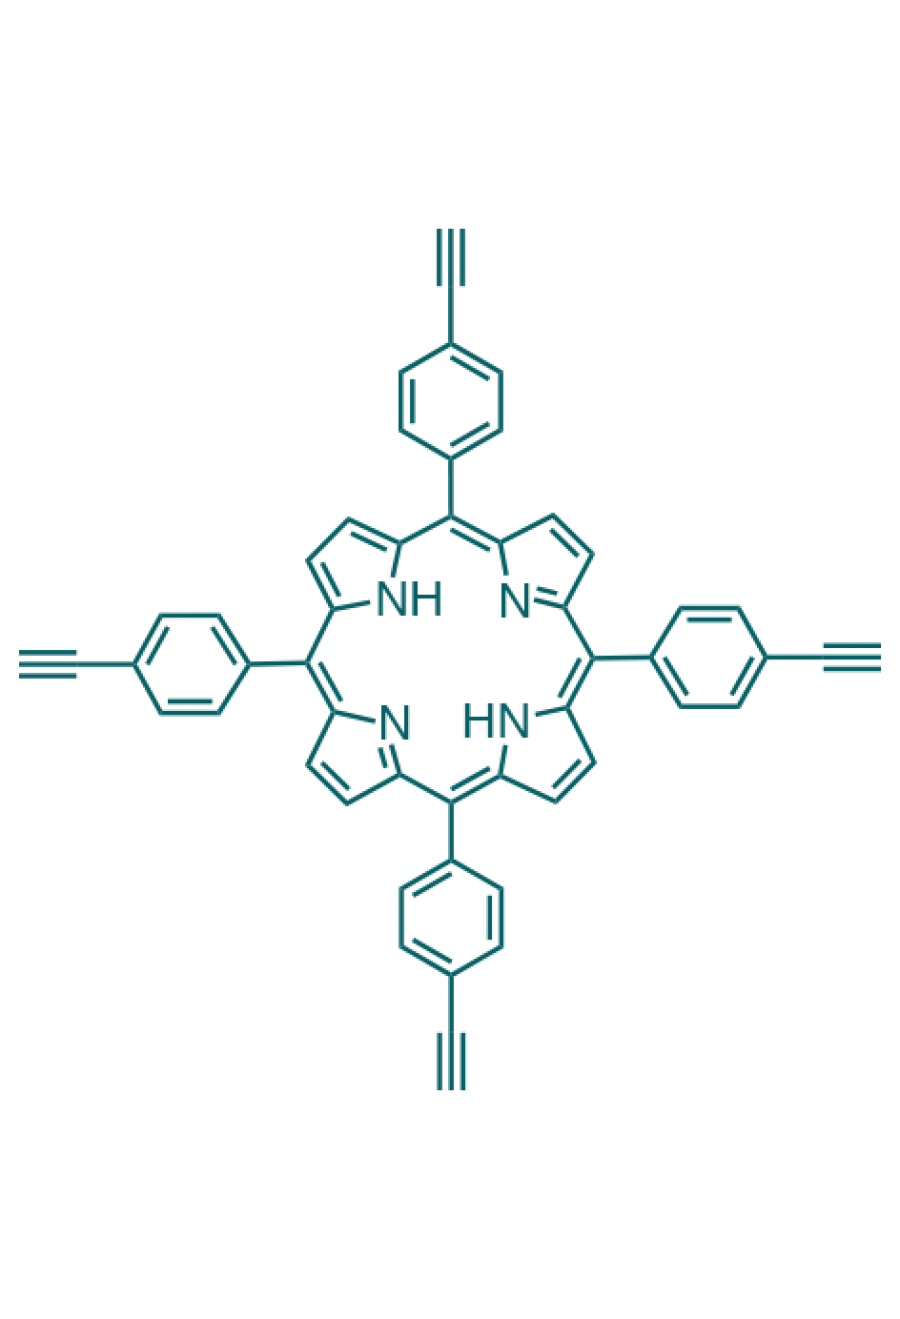 5,10,15,20-(tetra-4-ethynylphenyl)porphyrin